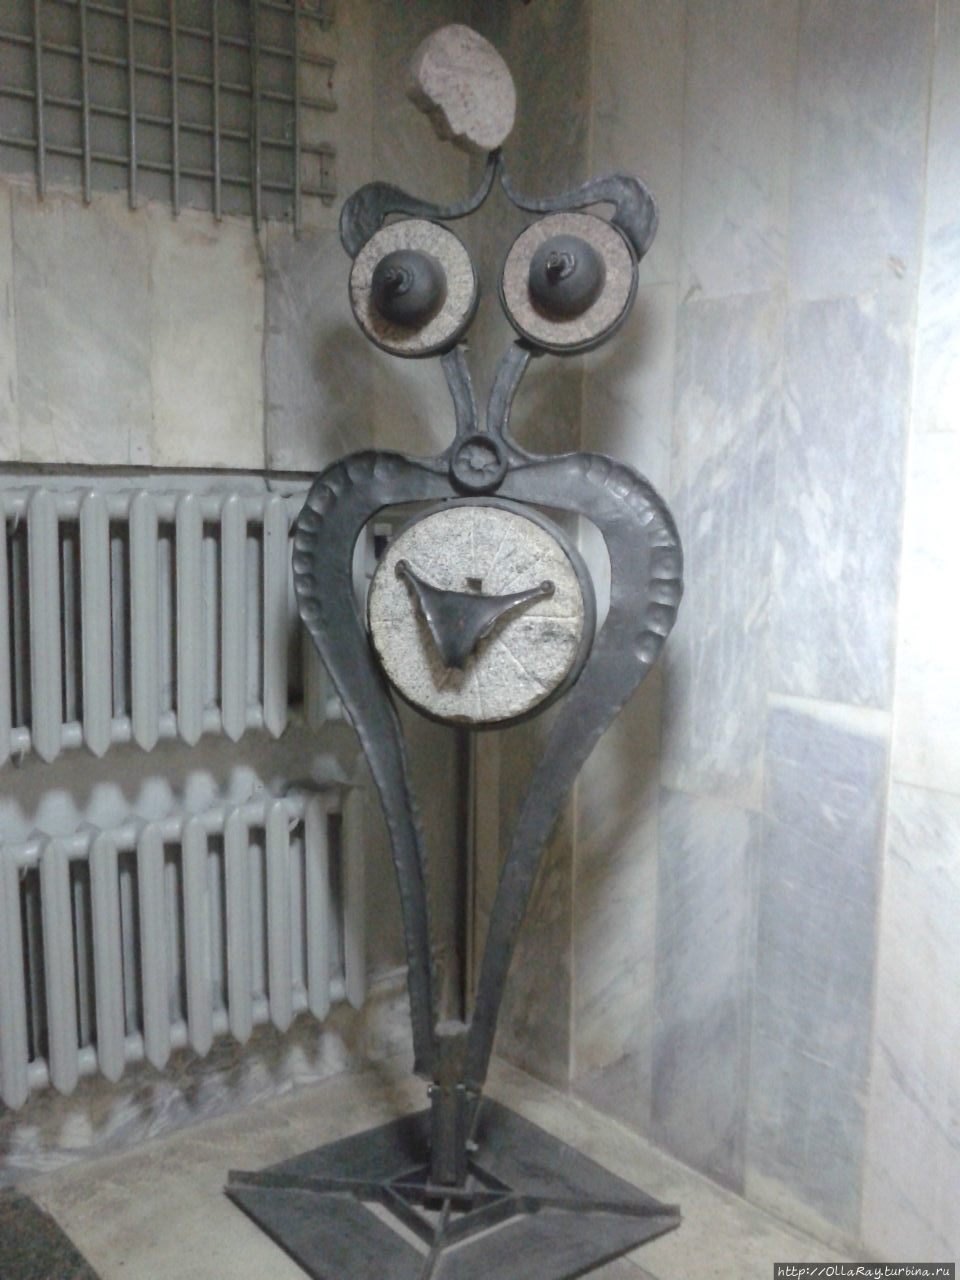 А вот эта забавная скульптура...ну просто забавная. Обнаружилась она в Витебском областном краеведческом музее, неподалёку от туалетной комнаты. Витебск, Беларусь